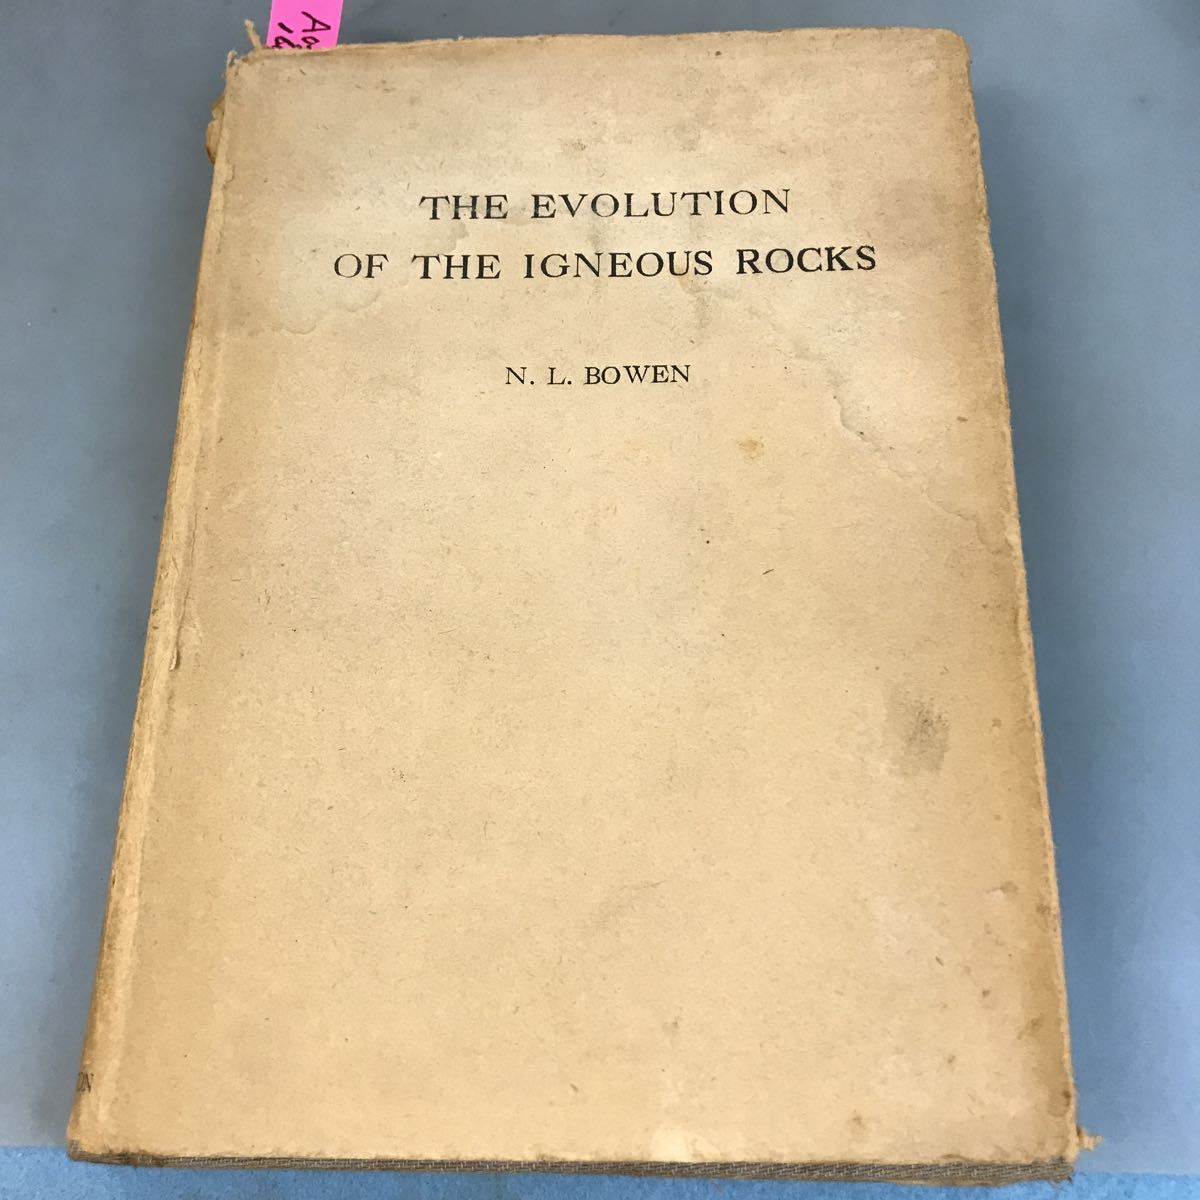 開梱 設置?無料 】 ROCKS IGNEOUS THE OF EVOLUTION THE A03-160 N.L.